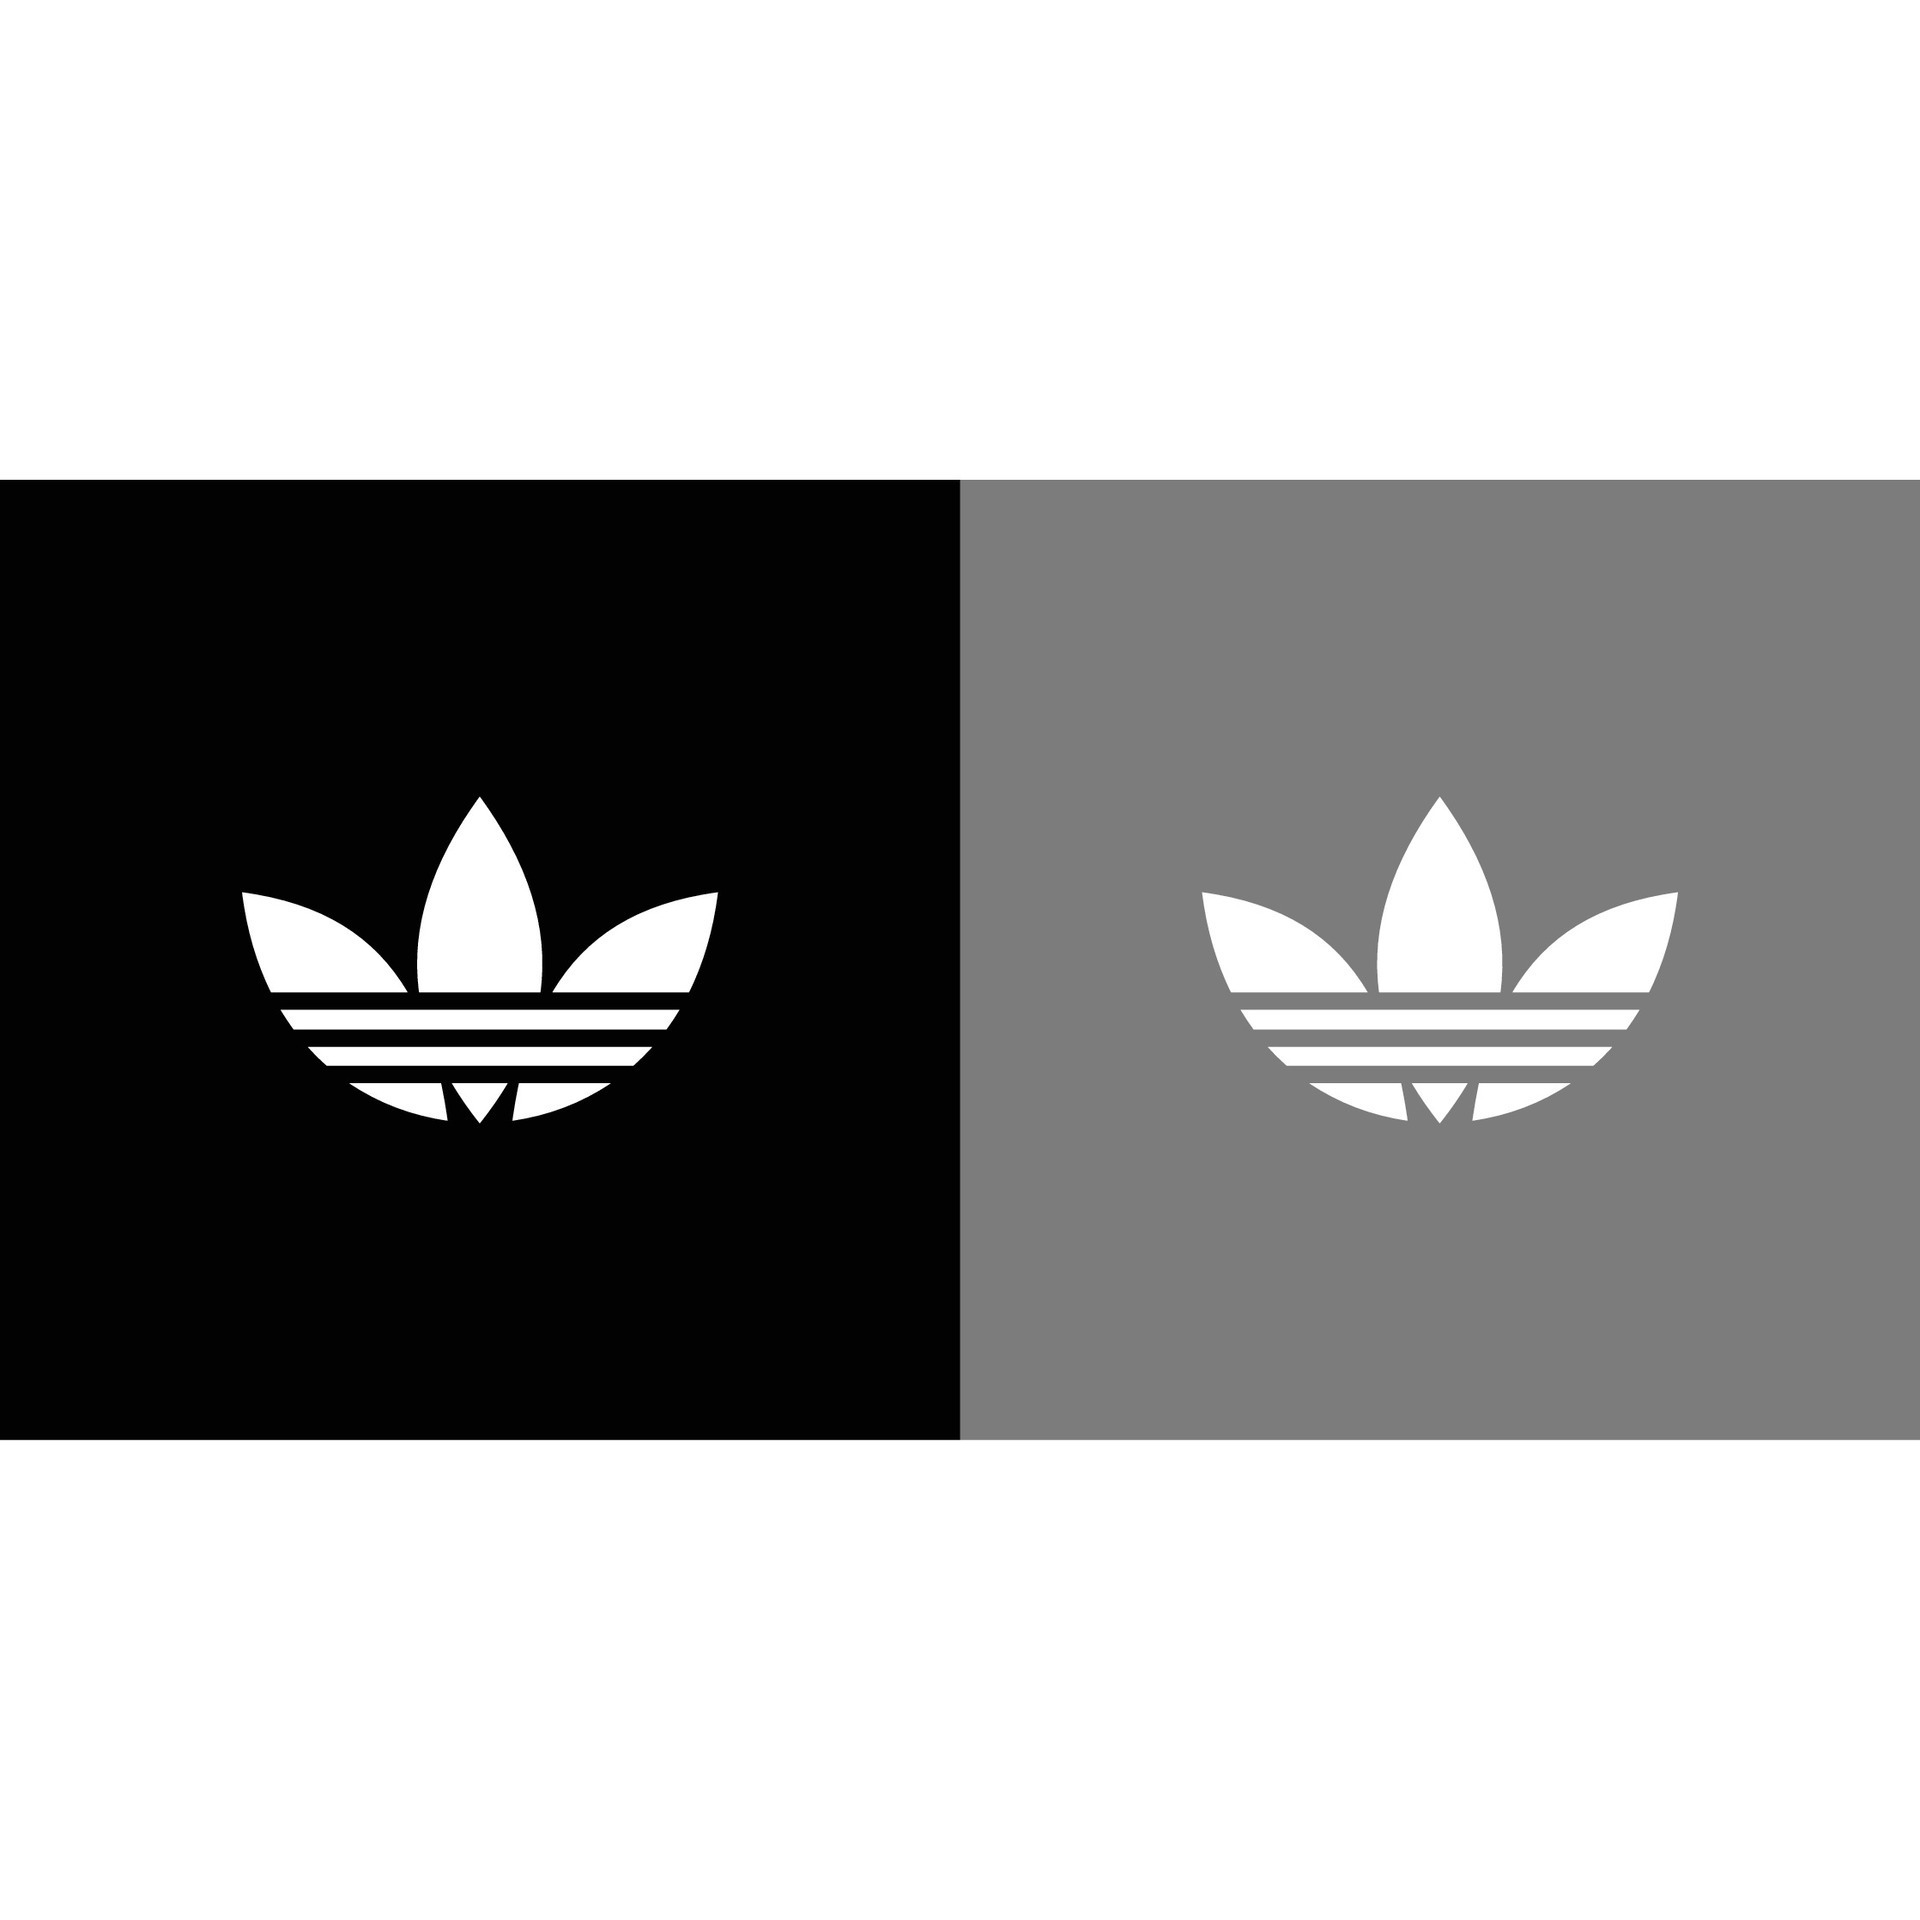 70+] Adidas Originals Logo Wallpaper - WallpaperSafari